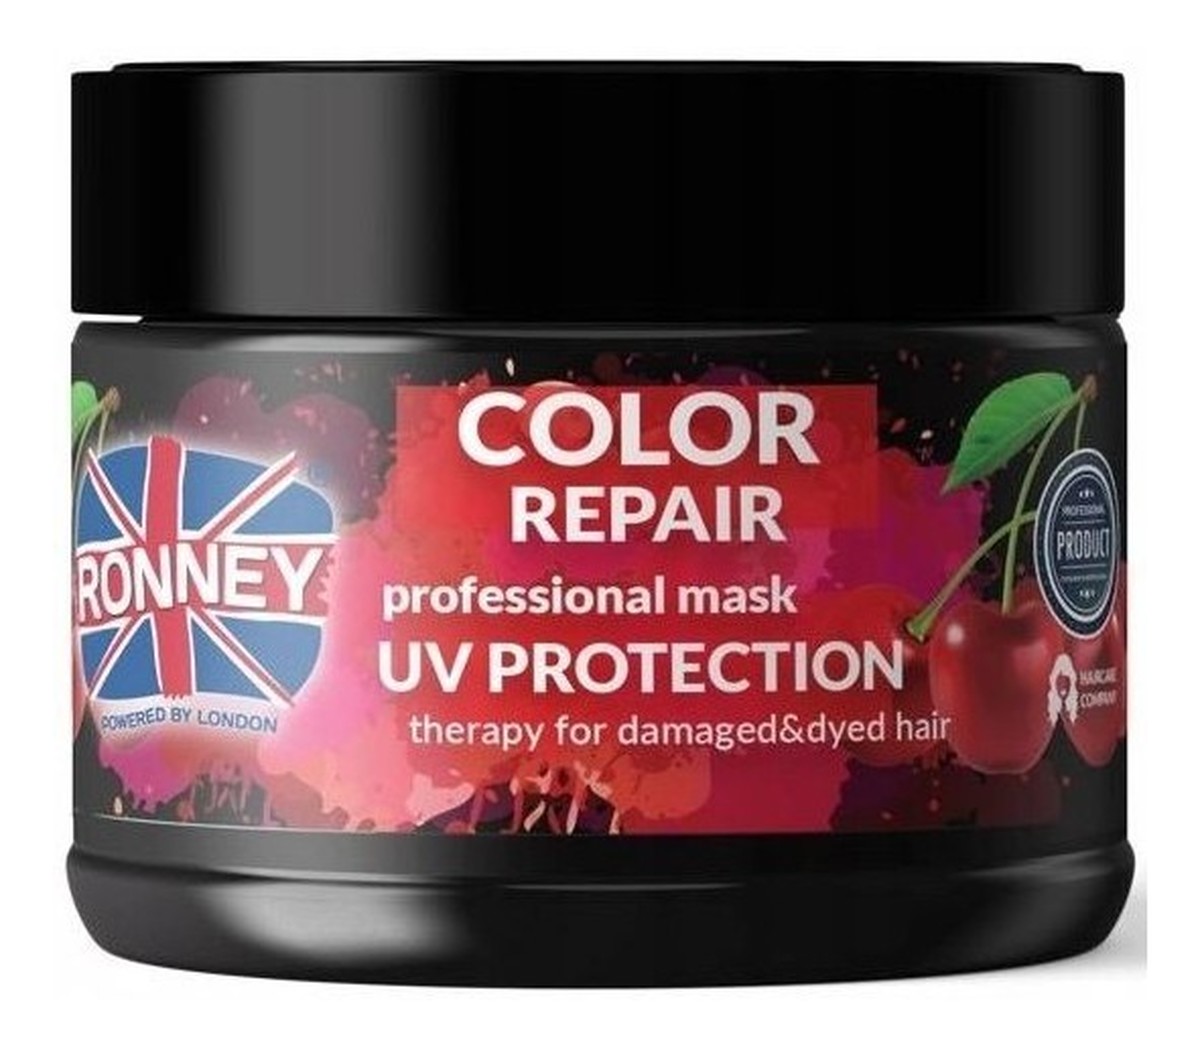 Color Repair Professional Mask UV Protection Therapy For Damaged & Dyed Hair maska zabezpieczająca kolor włosów farbowanych z ekstraktem z japońskiej wiśni